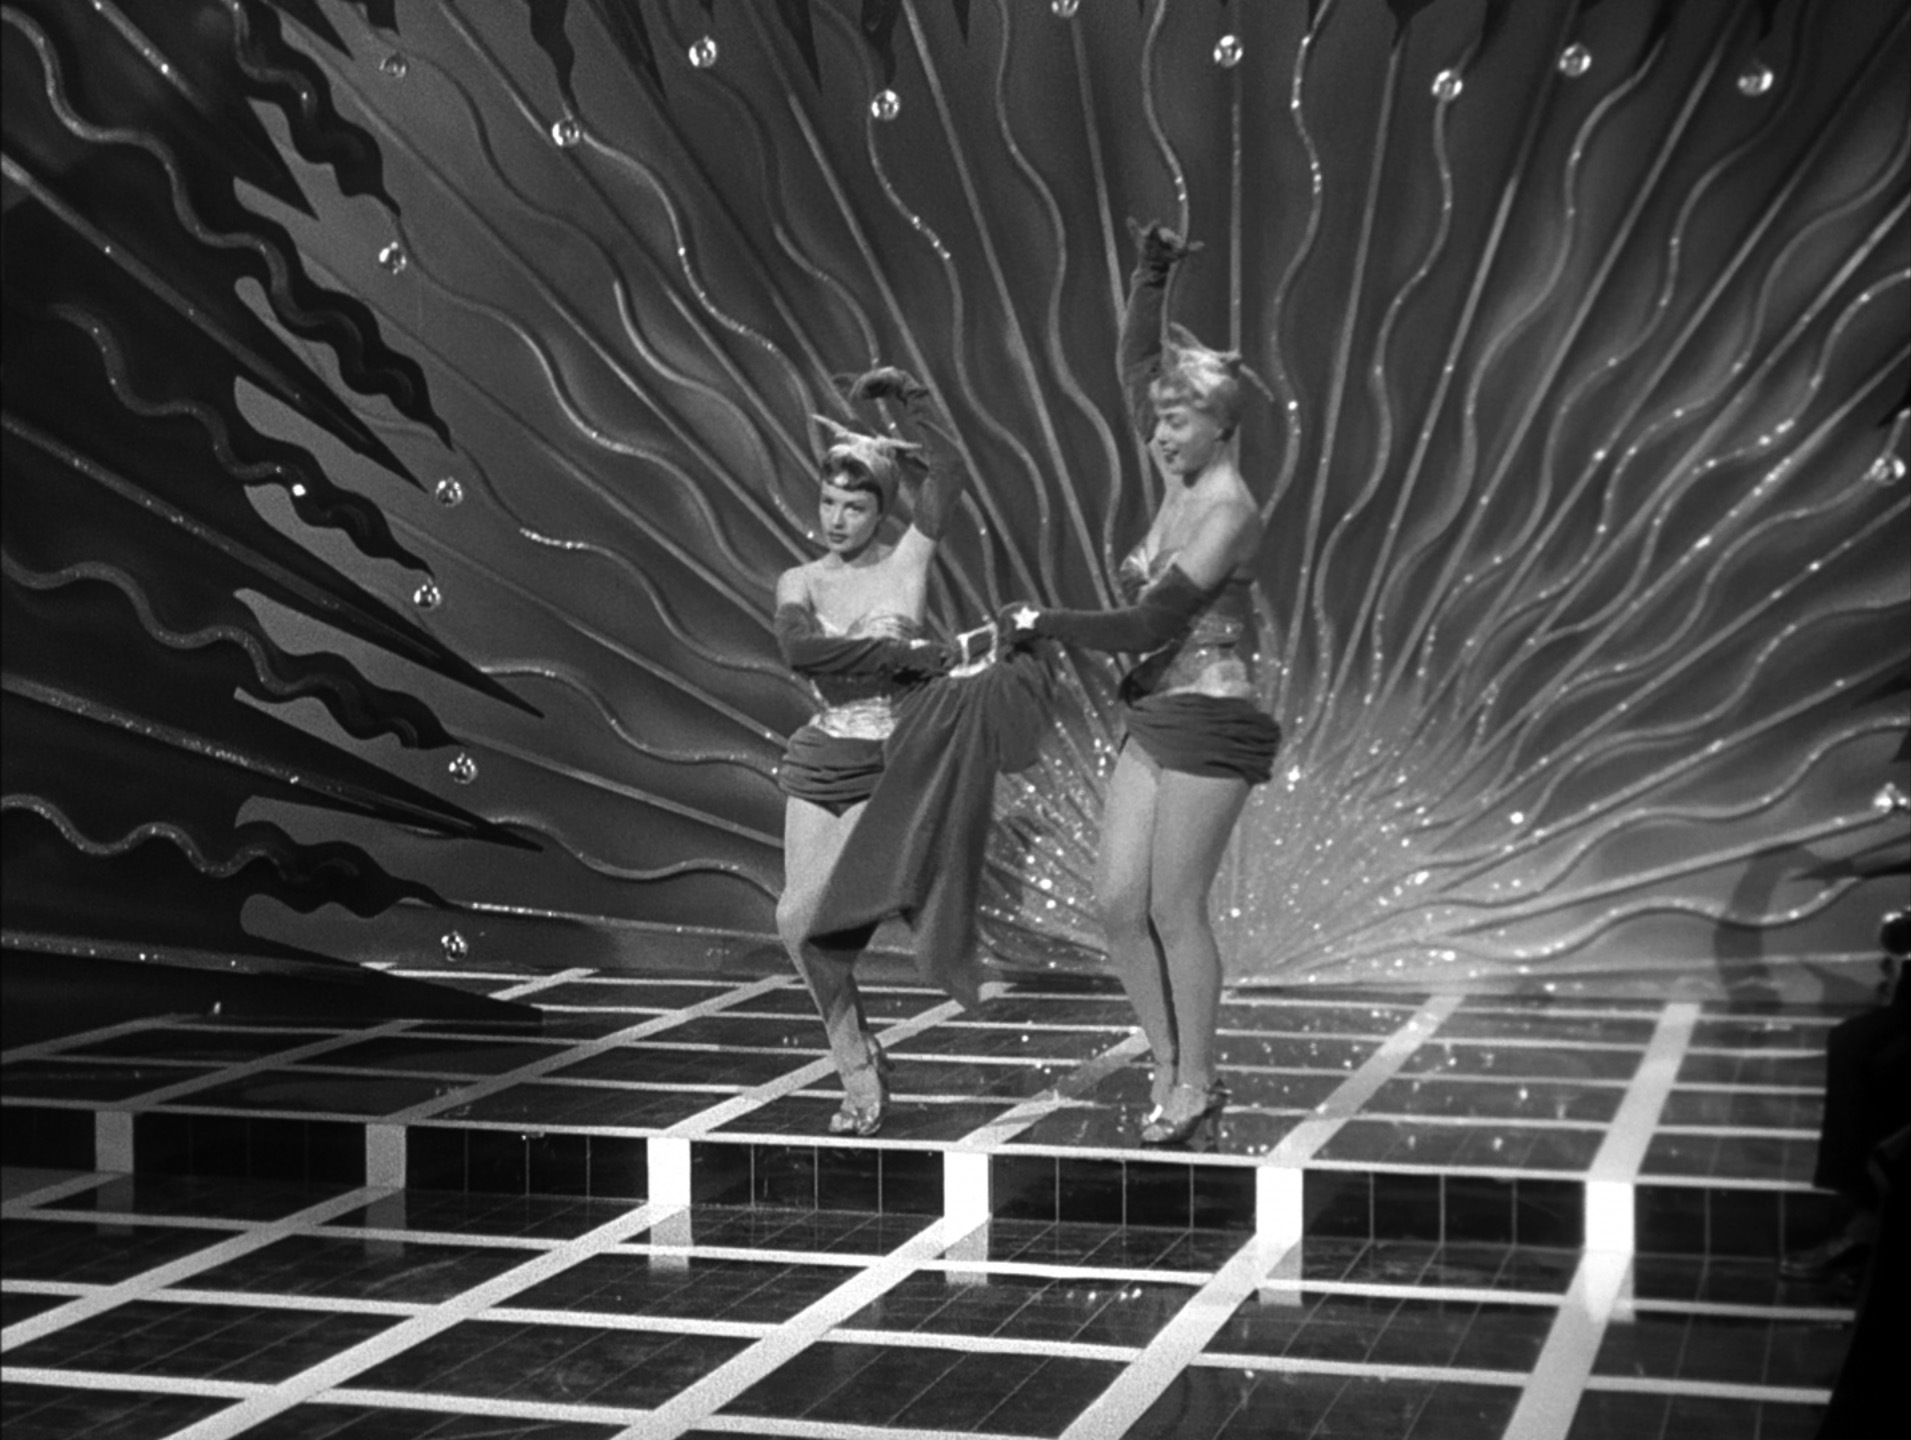 ジャンヌ・モロー（Jeanne Moreau）「現金に手を出すな」（1954）《踊り子編》_e0042361_17113550.jpg